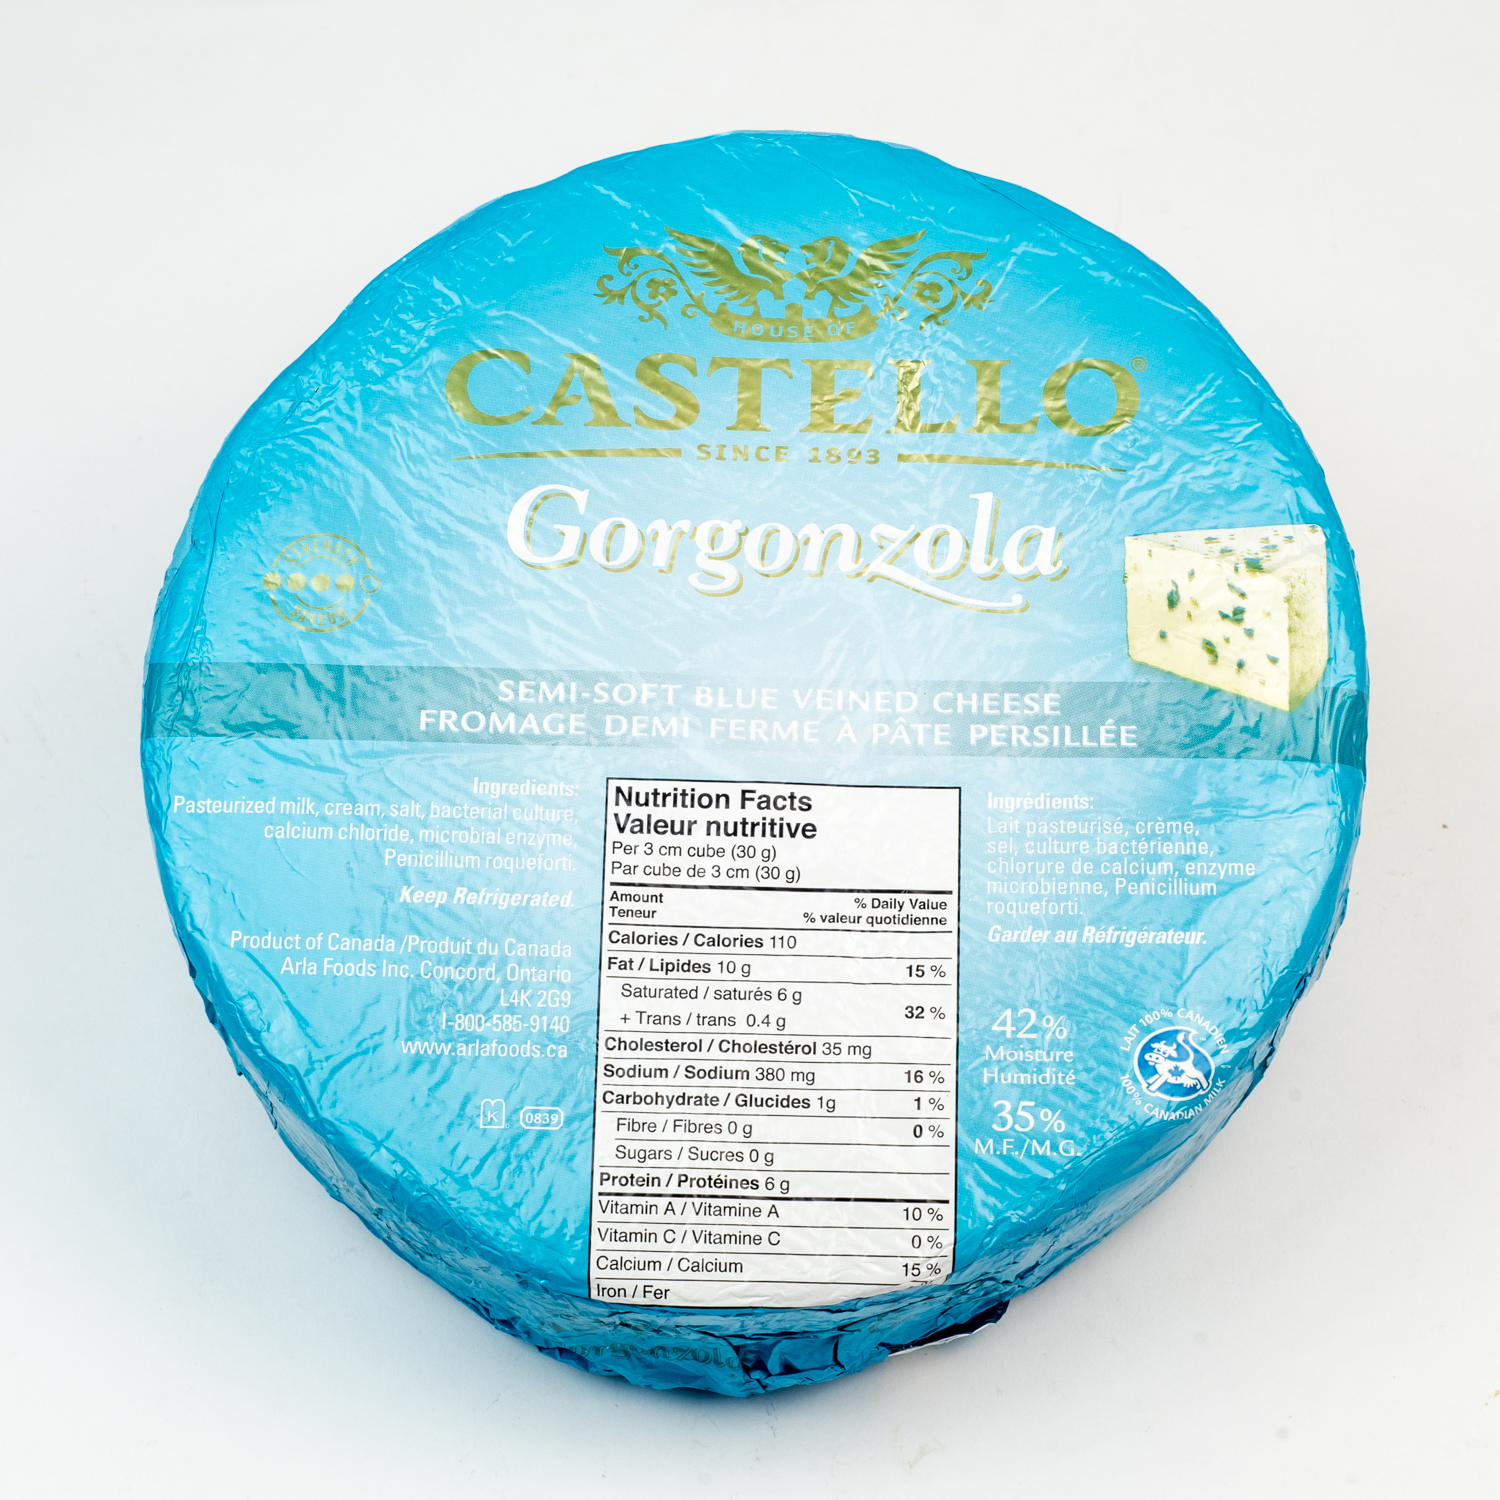 Castello® Gorgonzola 125g